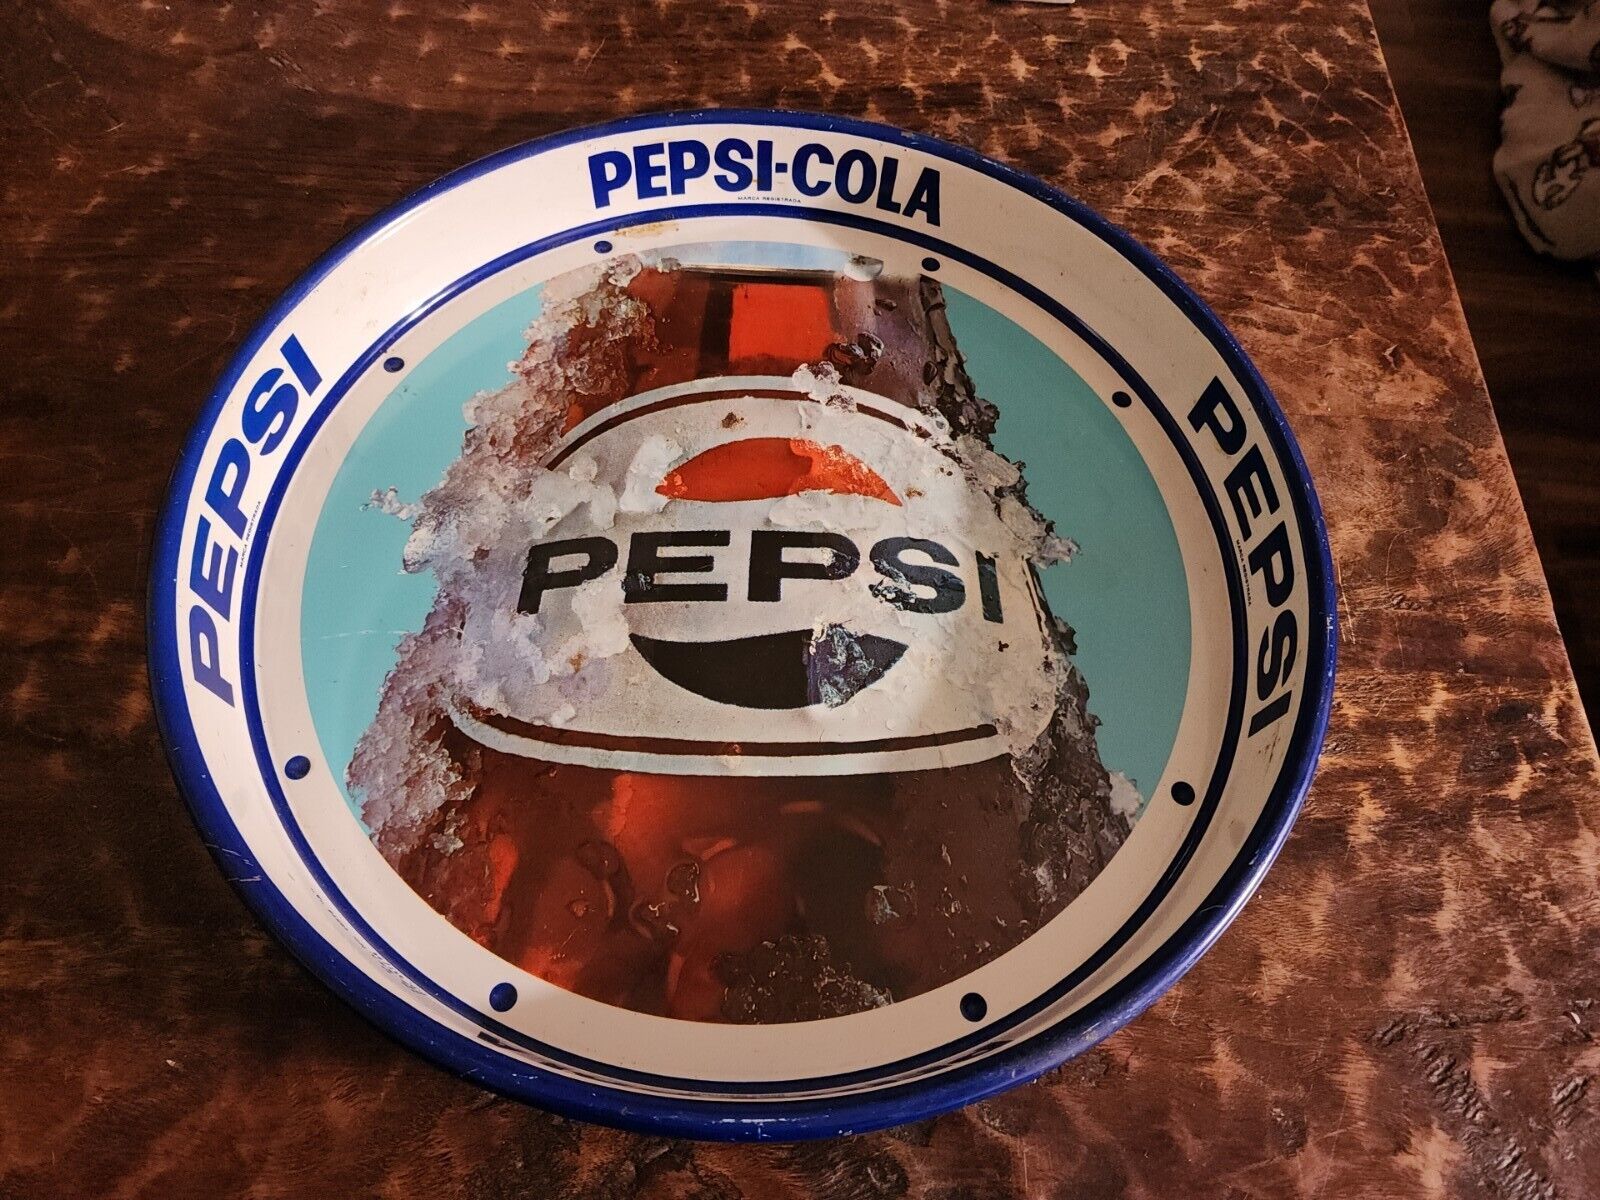 Pepsi-Cola Marca Registrada Vintage Metal Tray Mexico